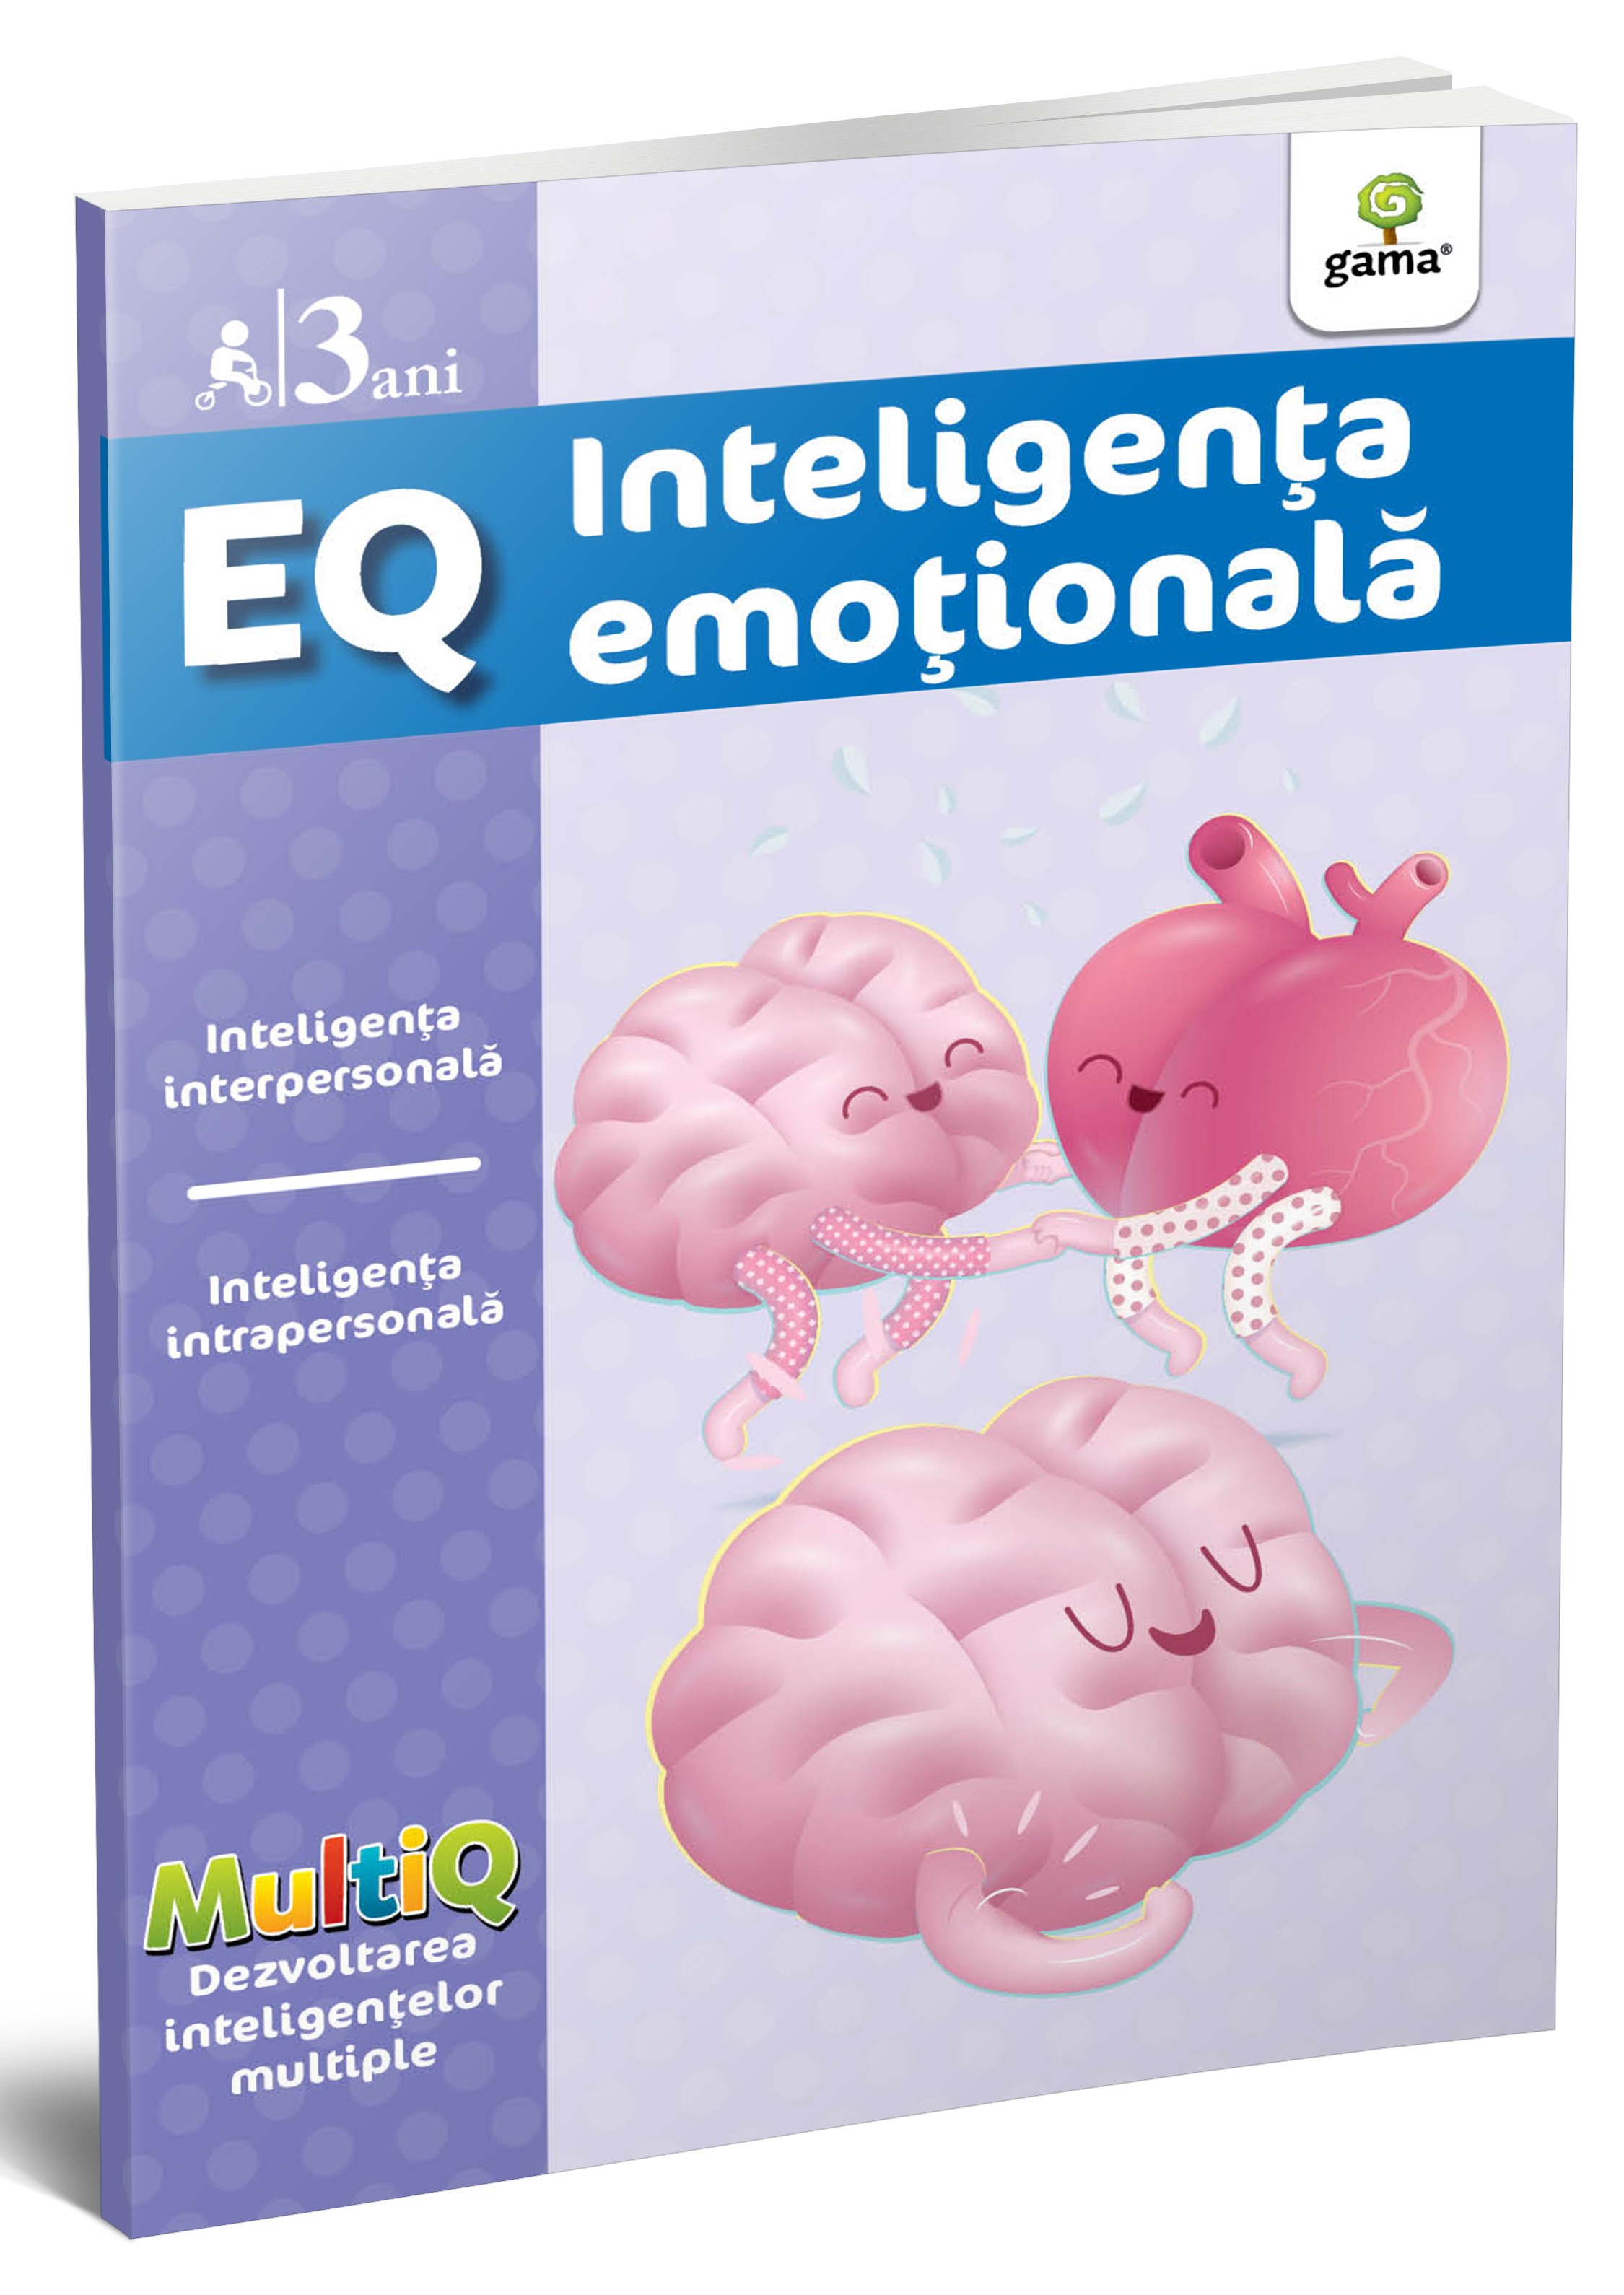 EQ.3 ani - Inteligenta emotionala